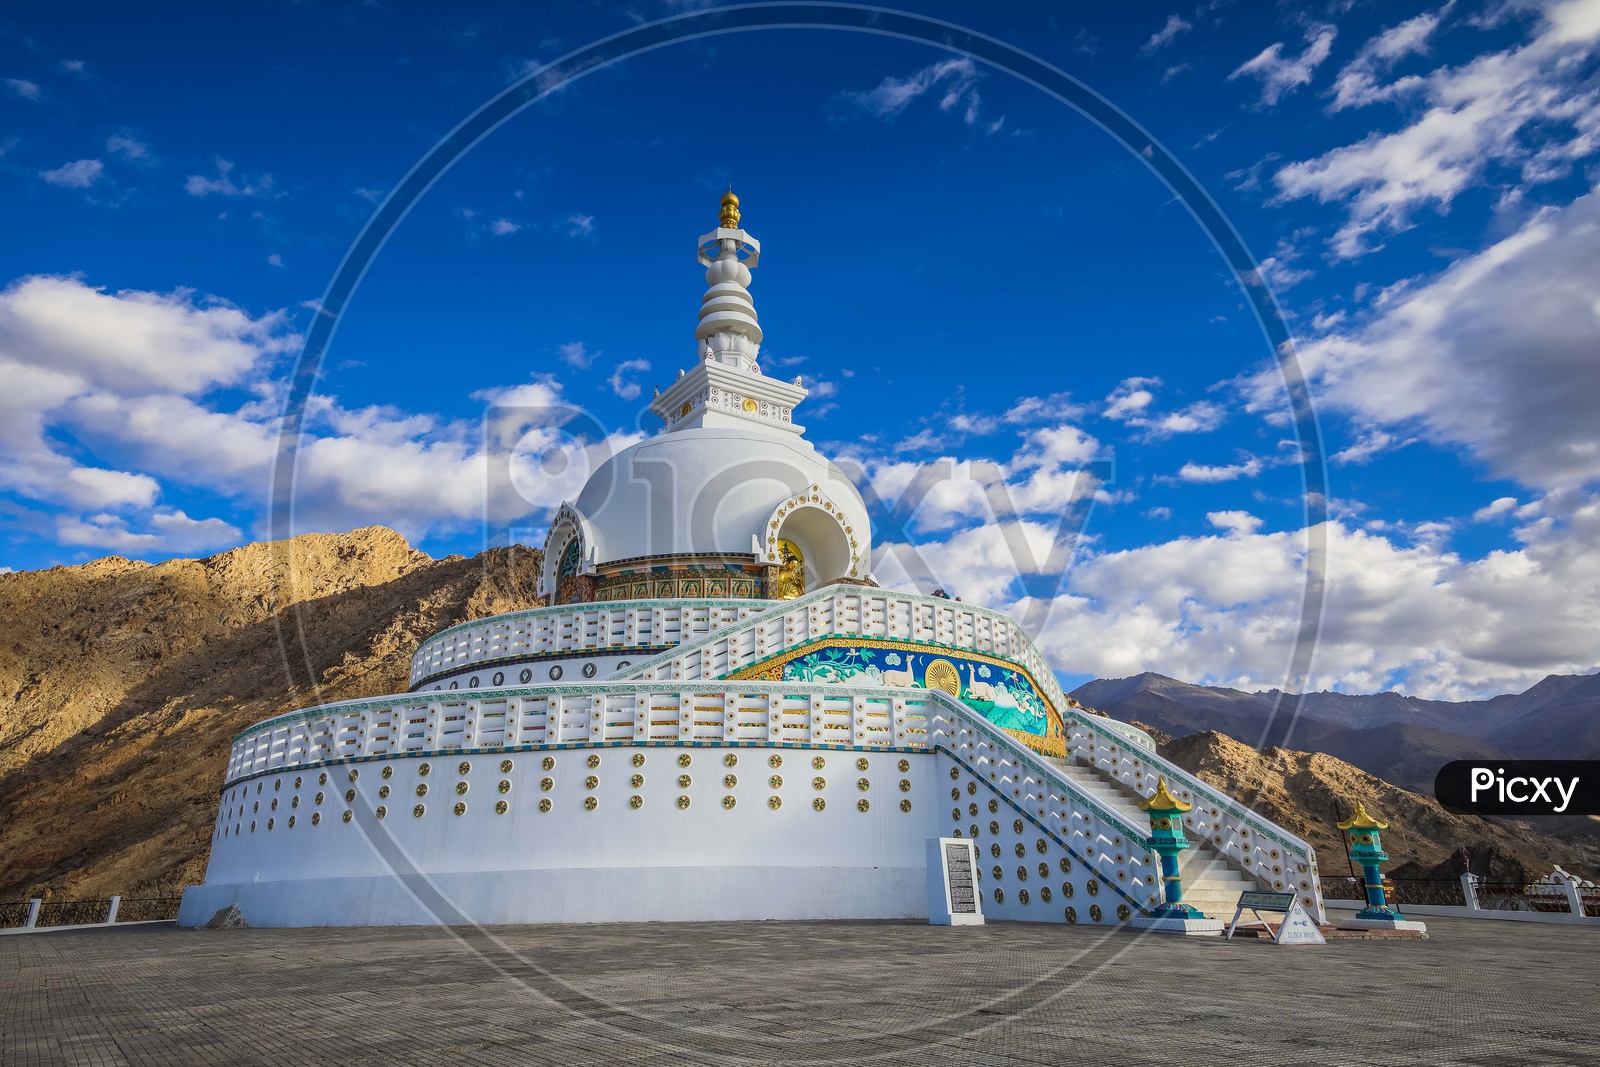 Landscape of Shanti Stupa